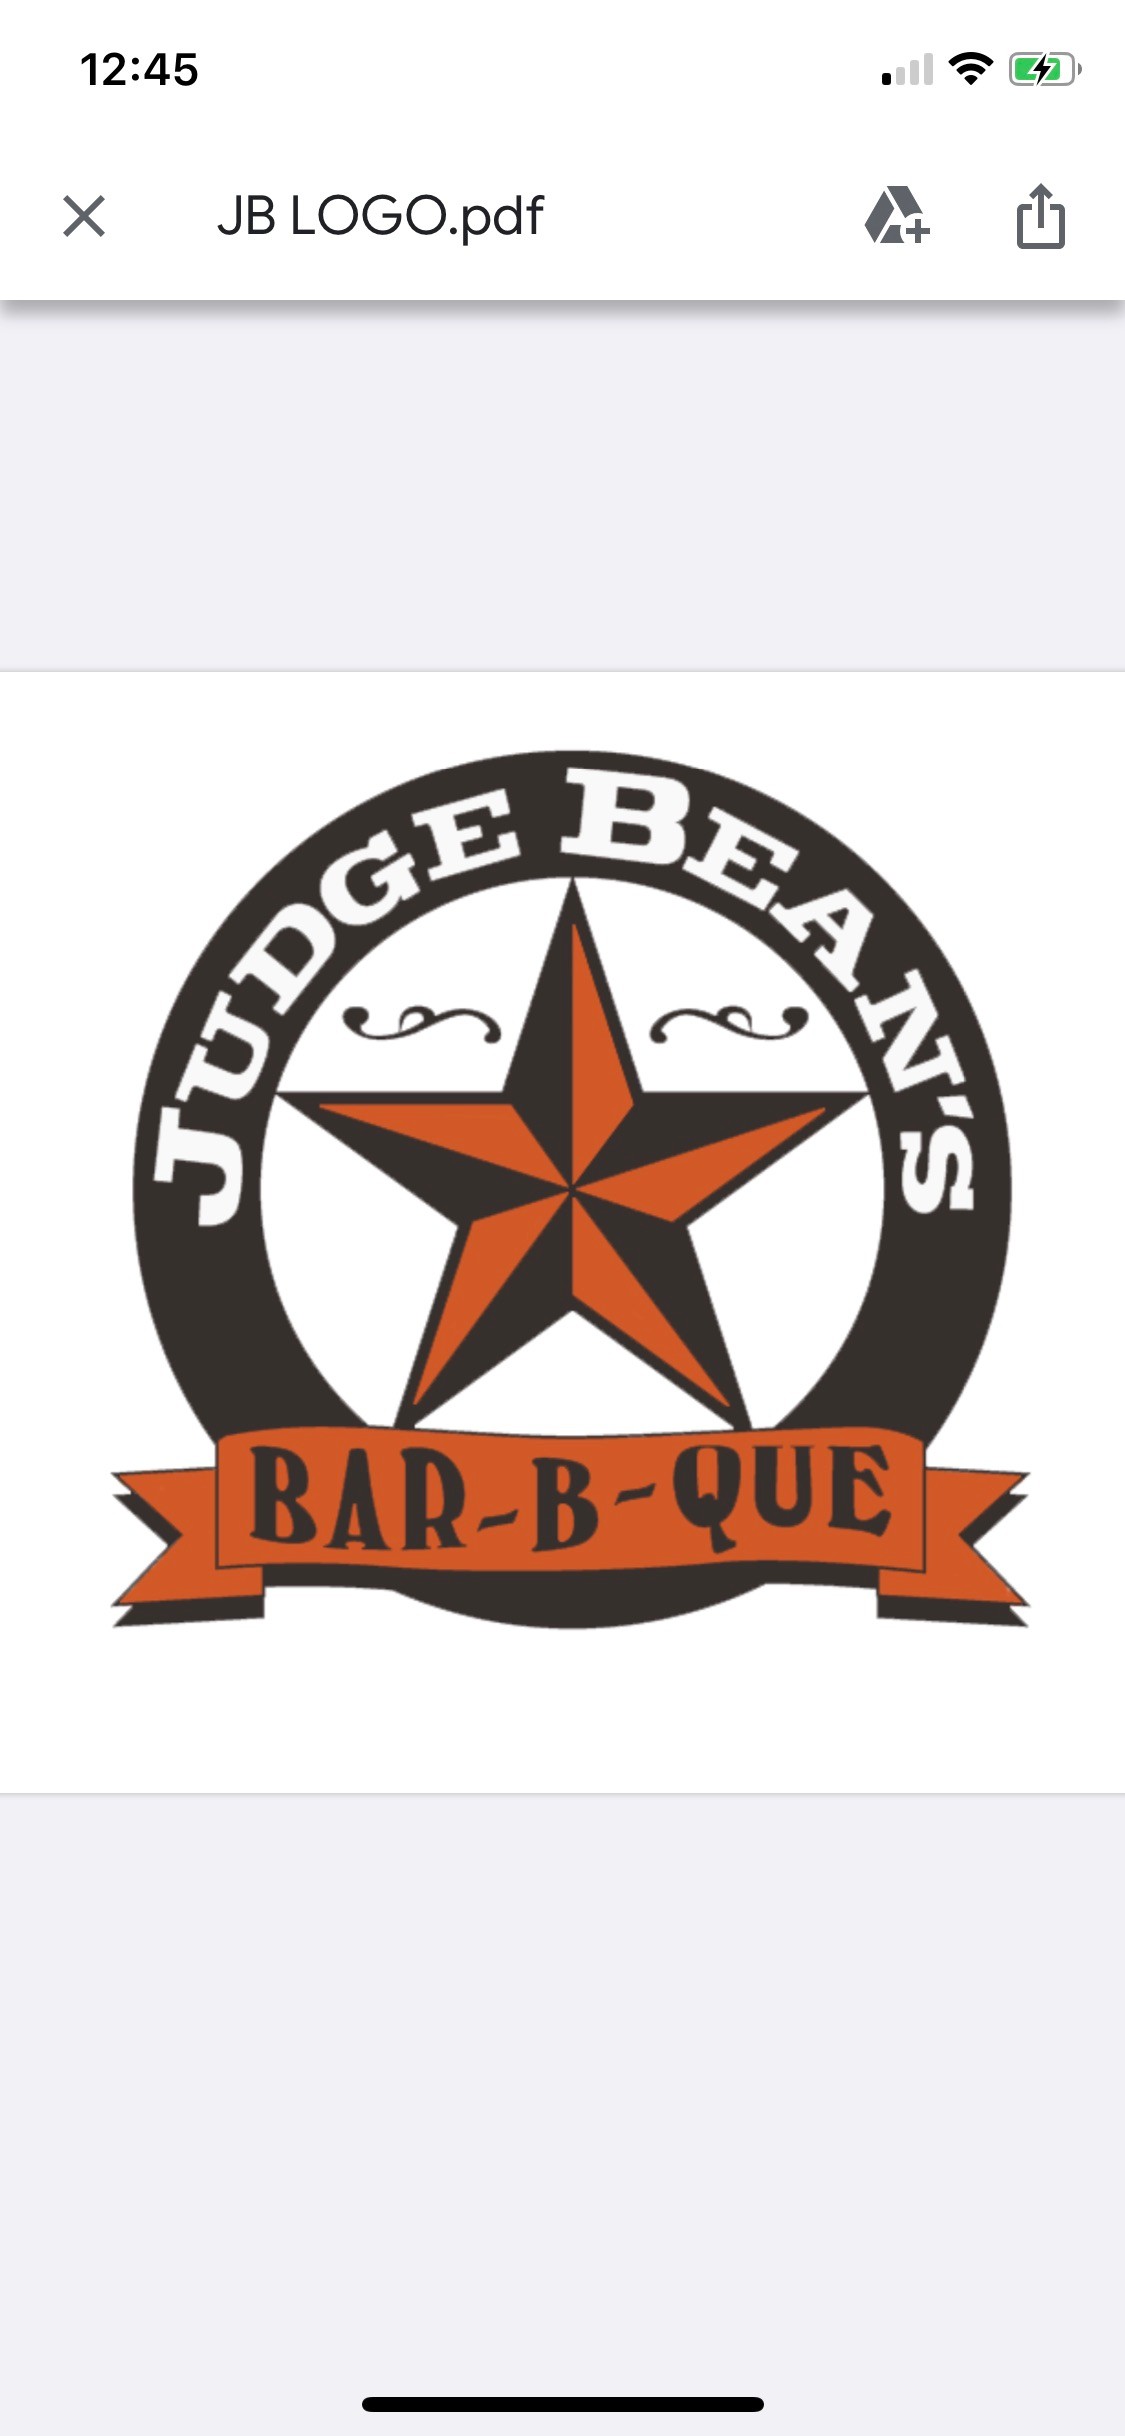 Judge Bean's BBQ 7022 Church St E